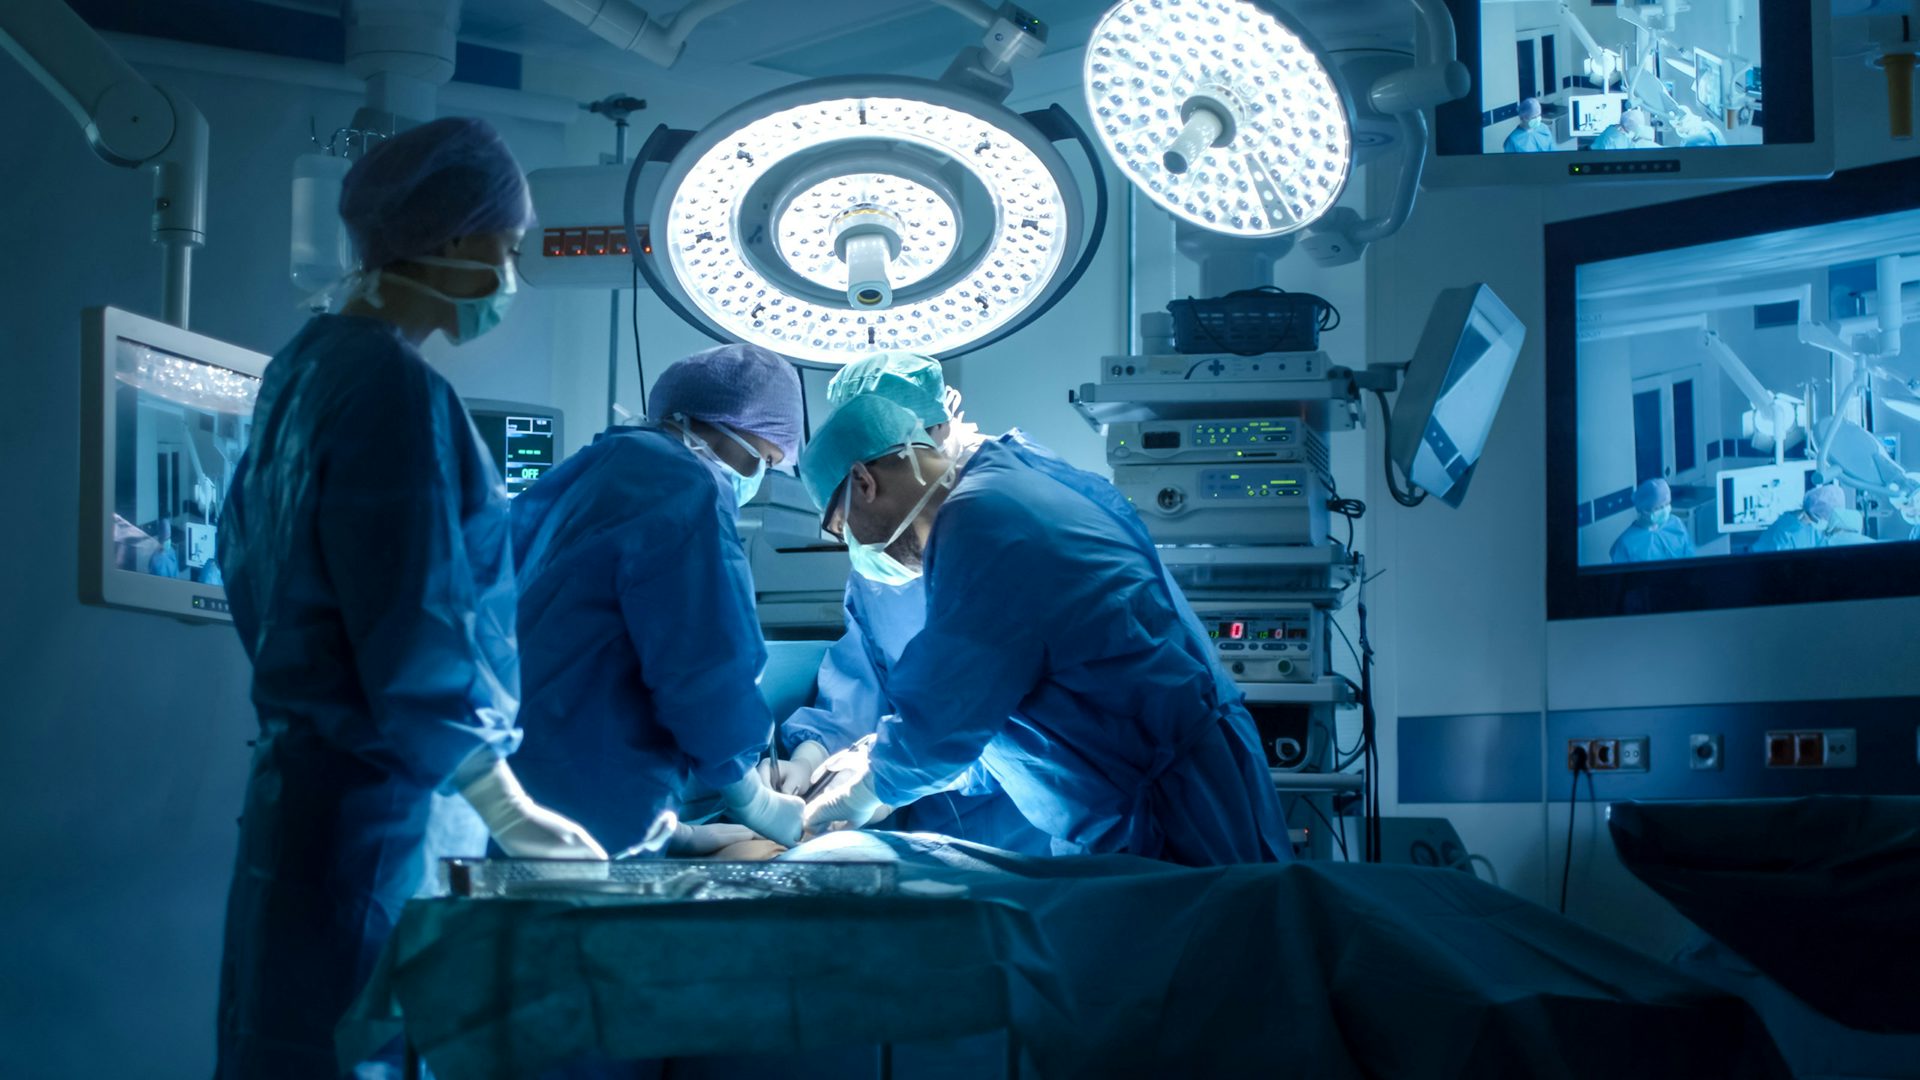 Chirurgen, die in einem Operationssaal operieren: Ein Team von erfahrenen Chirurgen, die einen medizinischen Eingriff in einem sterilen Operationssaal durchführen.